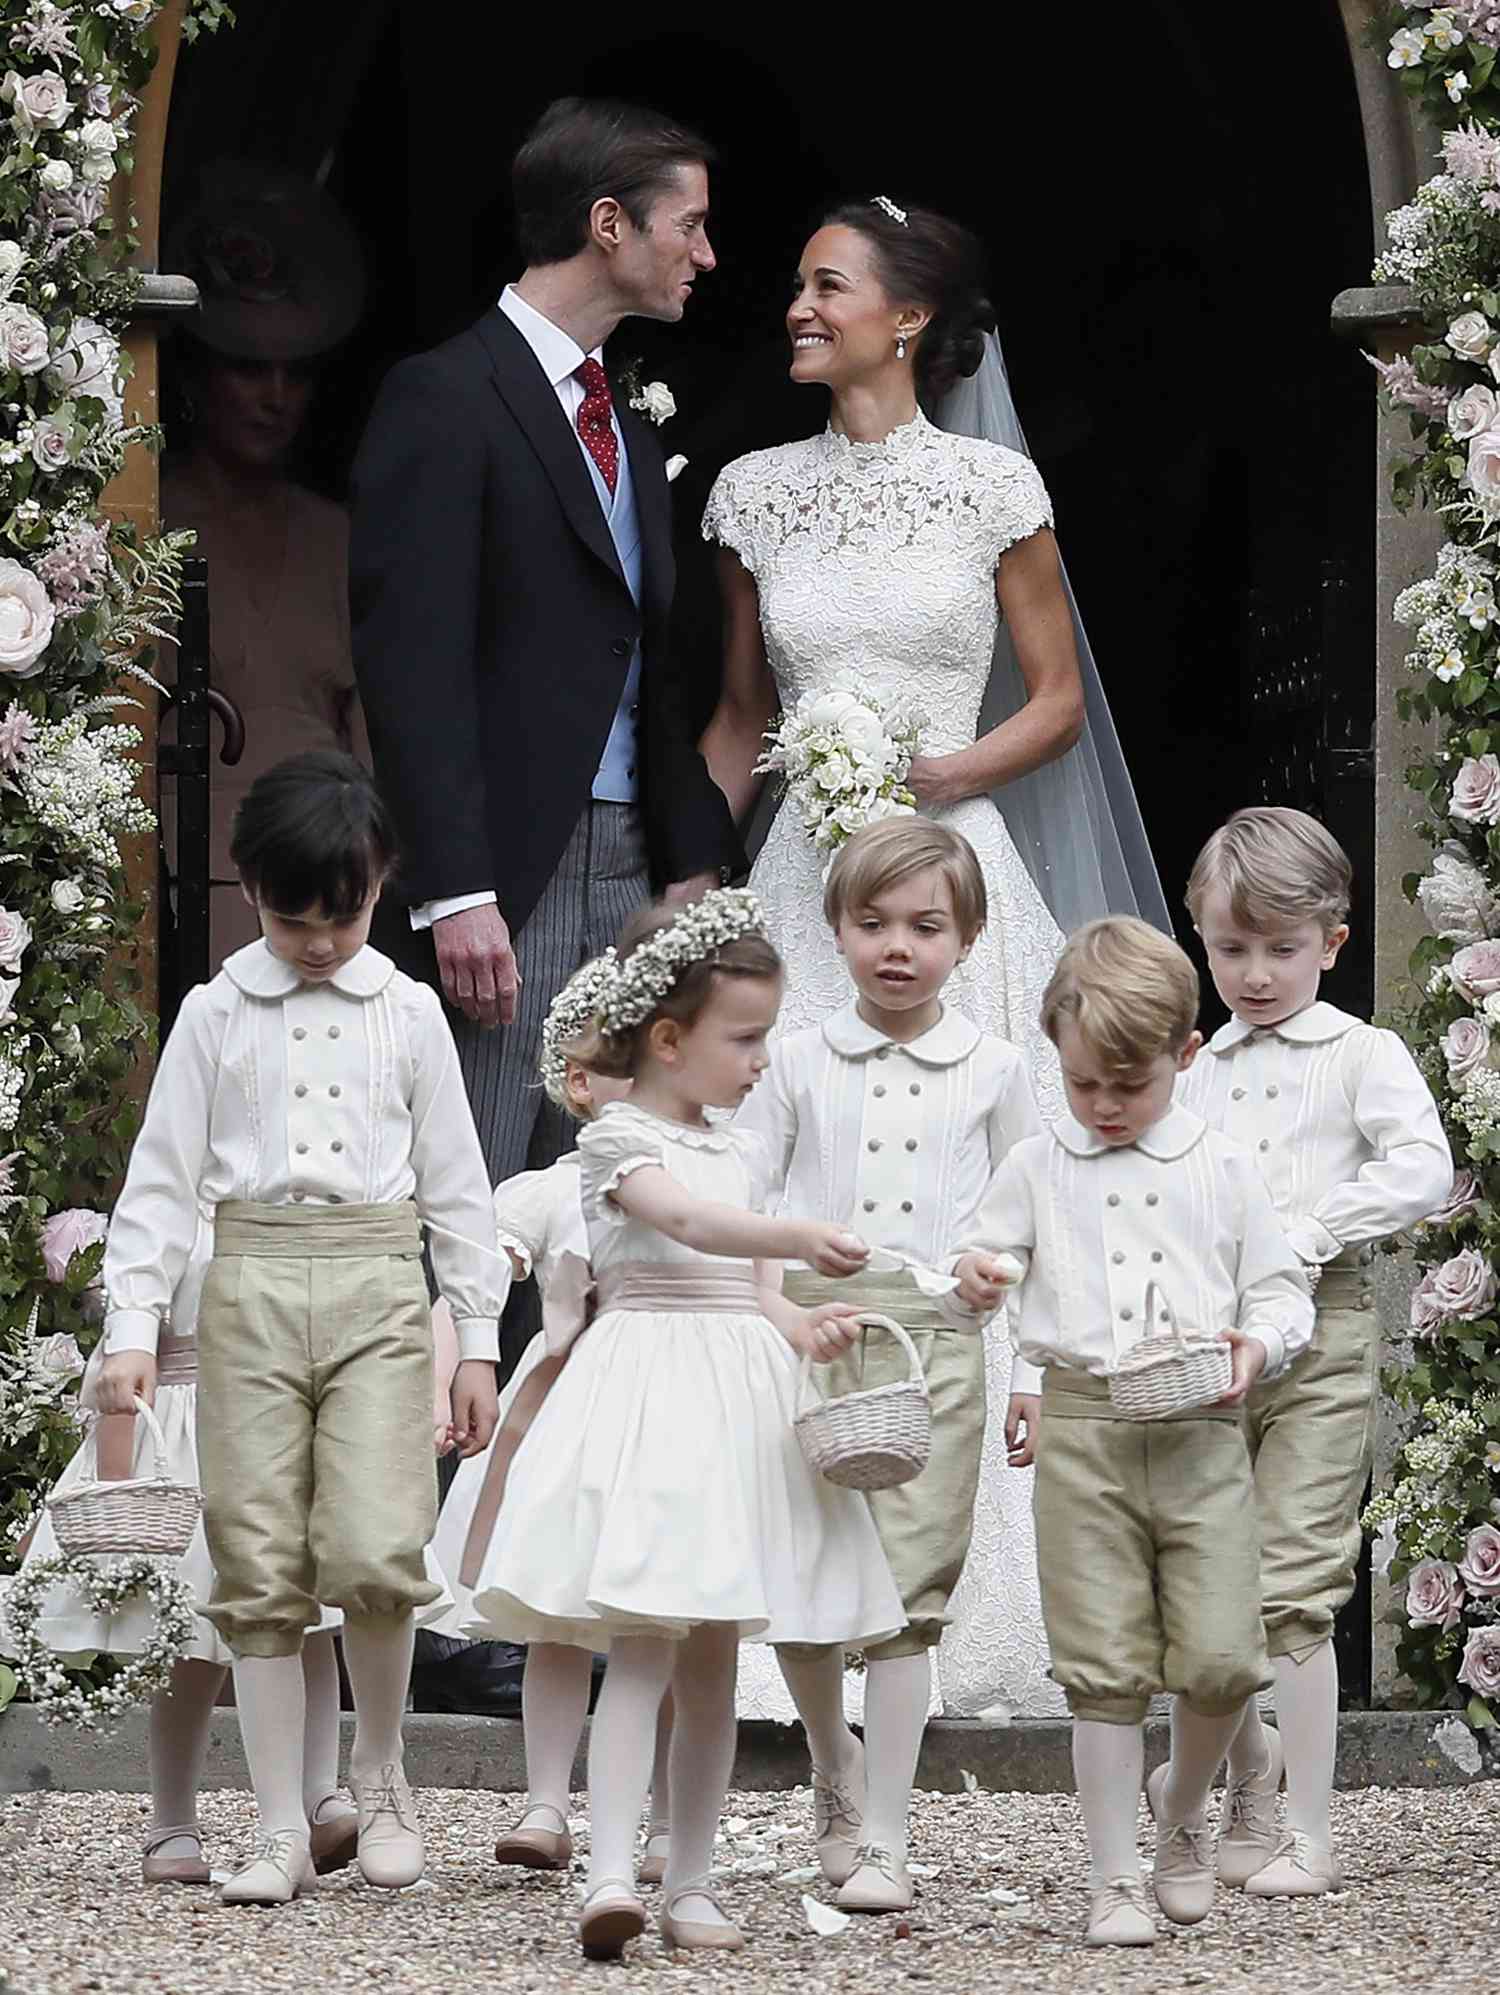 Pippa Middleton and James Matthews wedding day